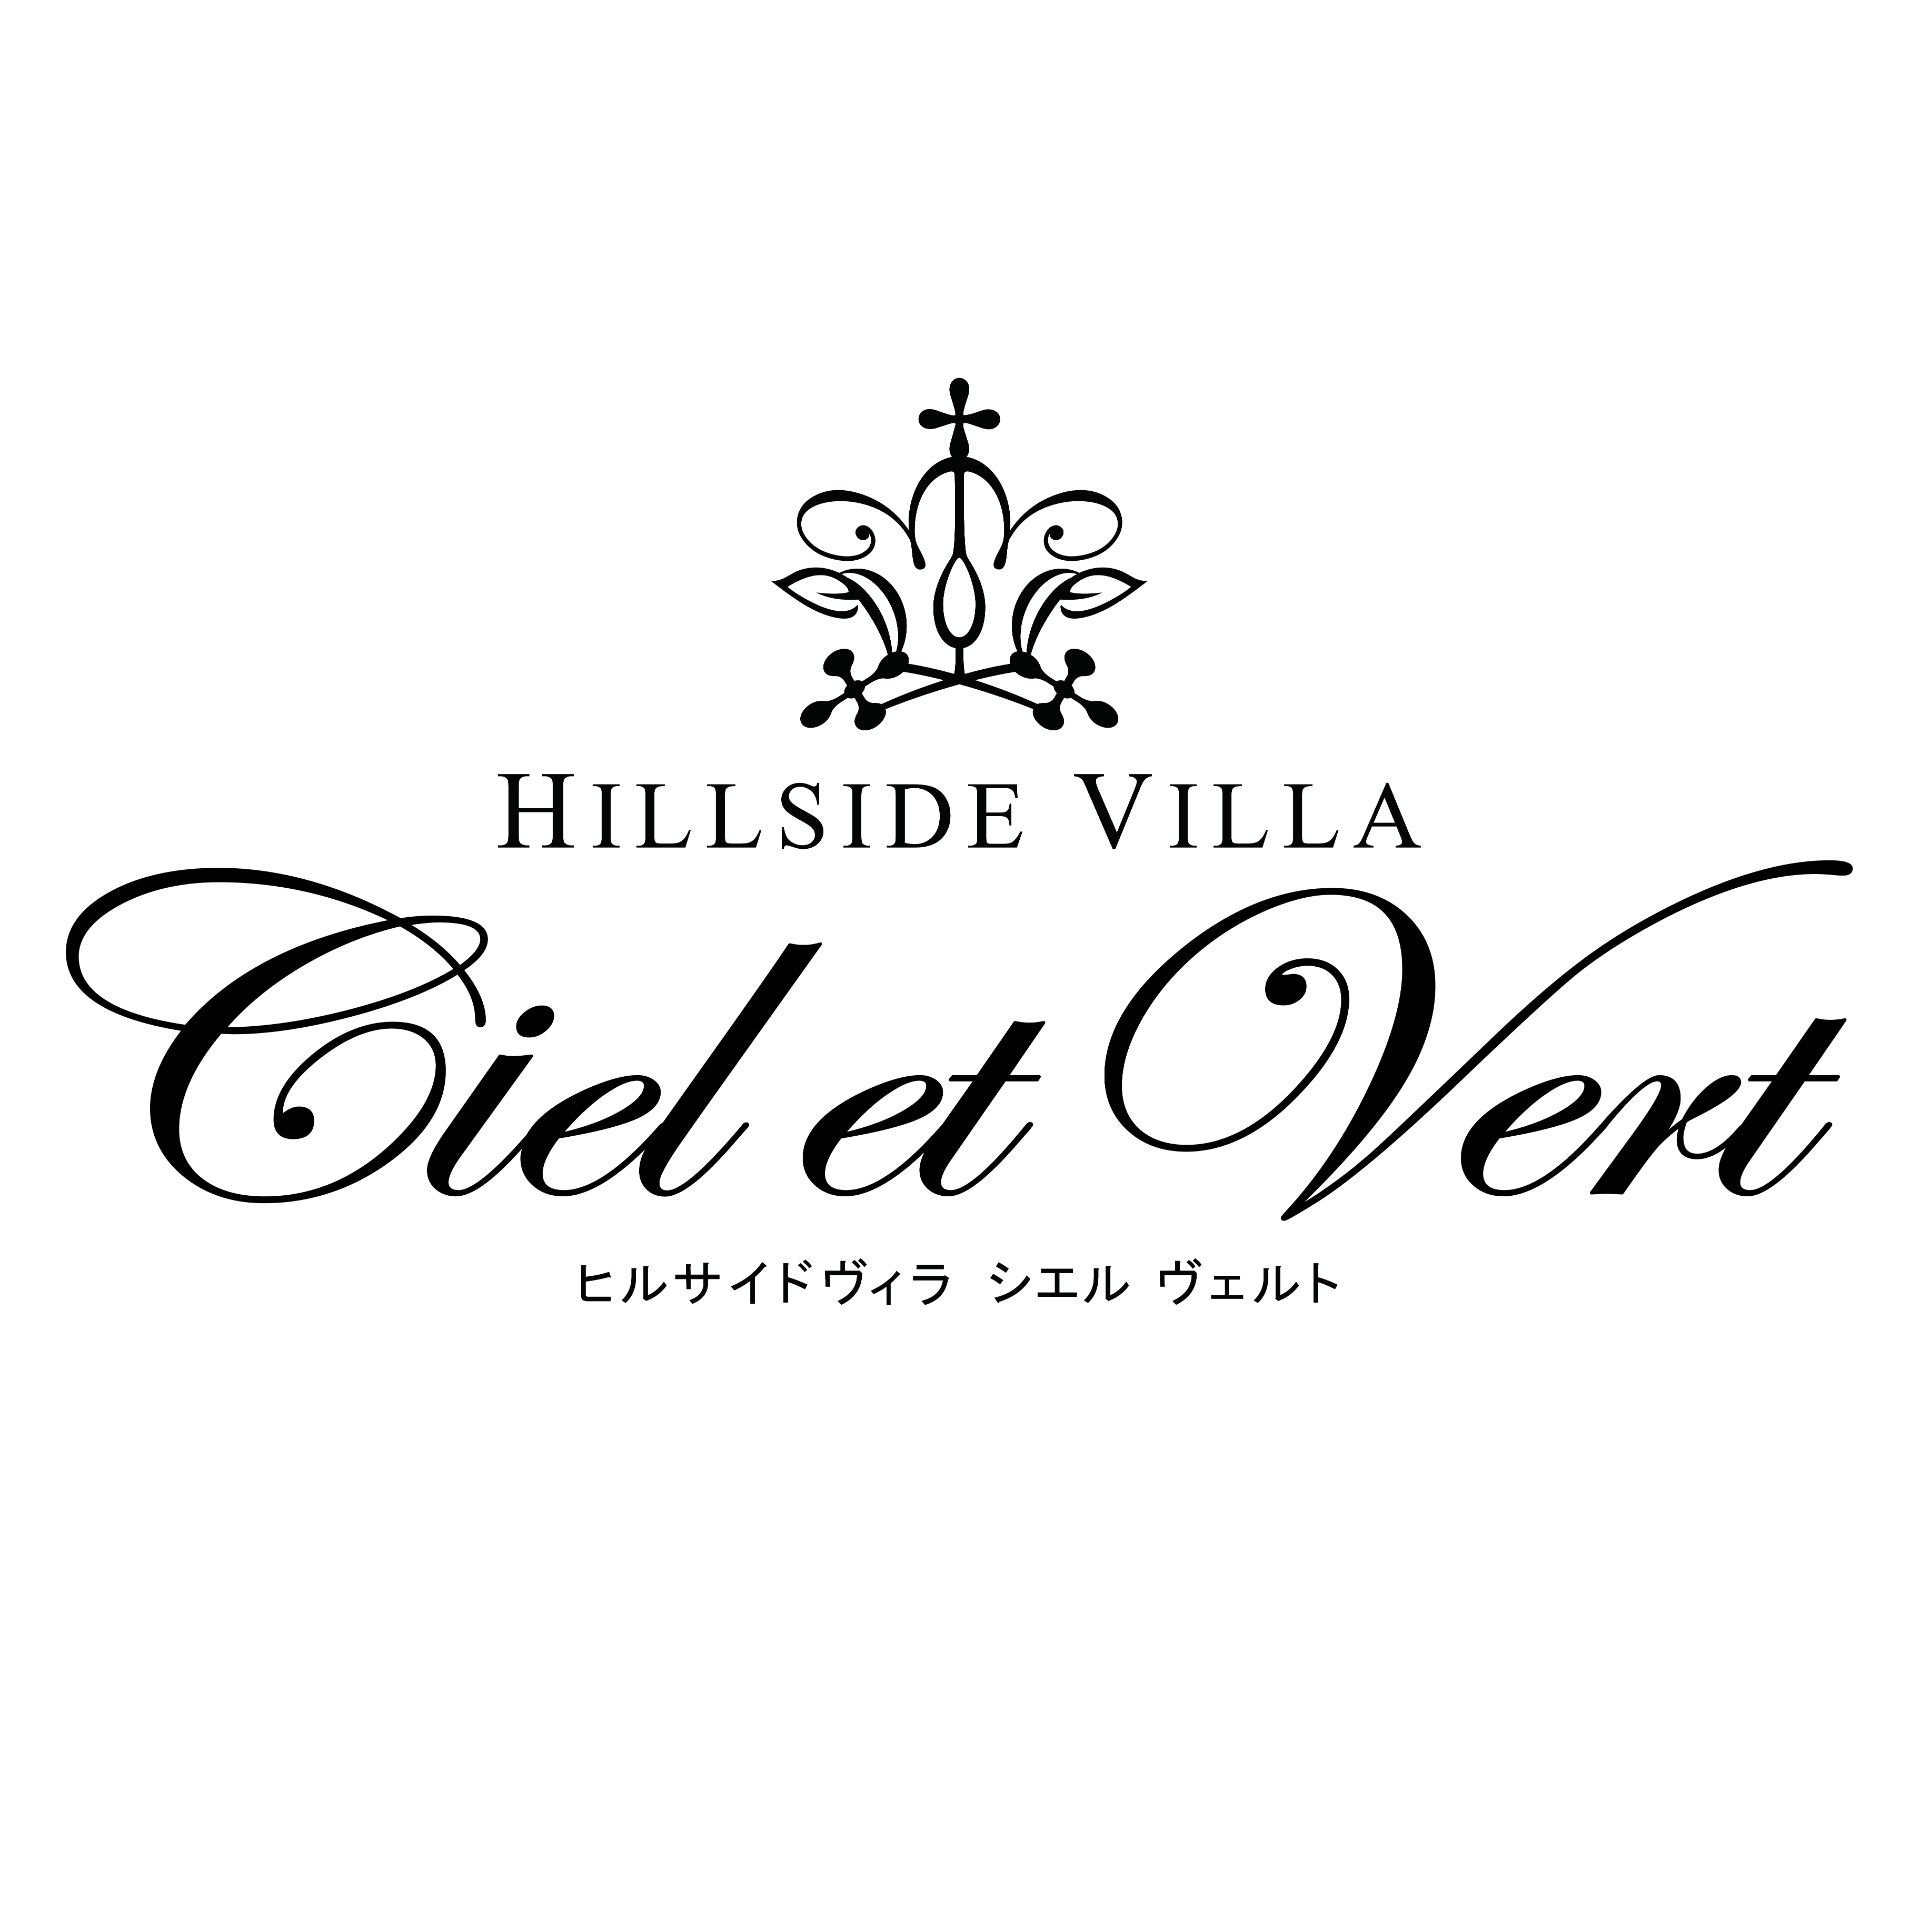 HILLSIDE VILLA Ciel et Vert(ヒルサイドヴィラ シエルヴェルト)